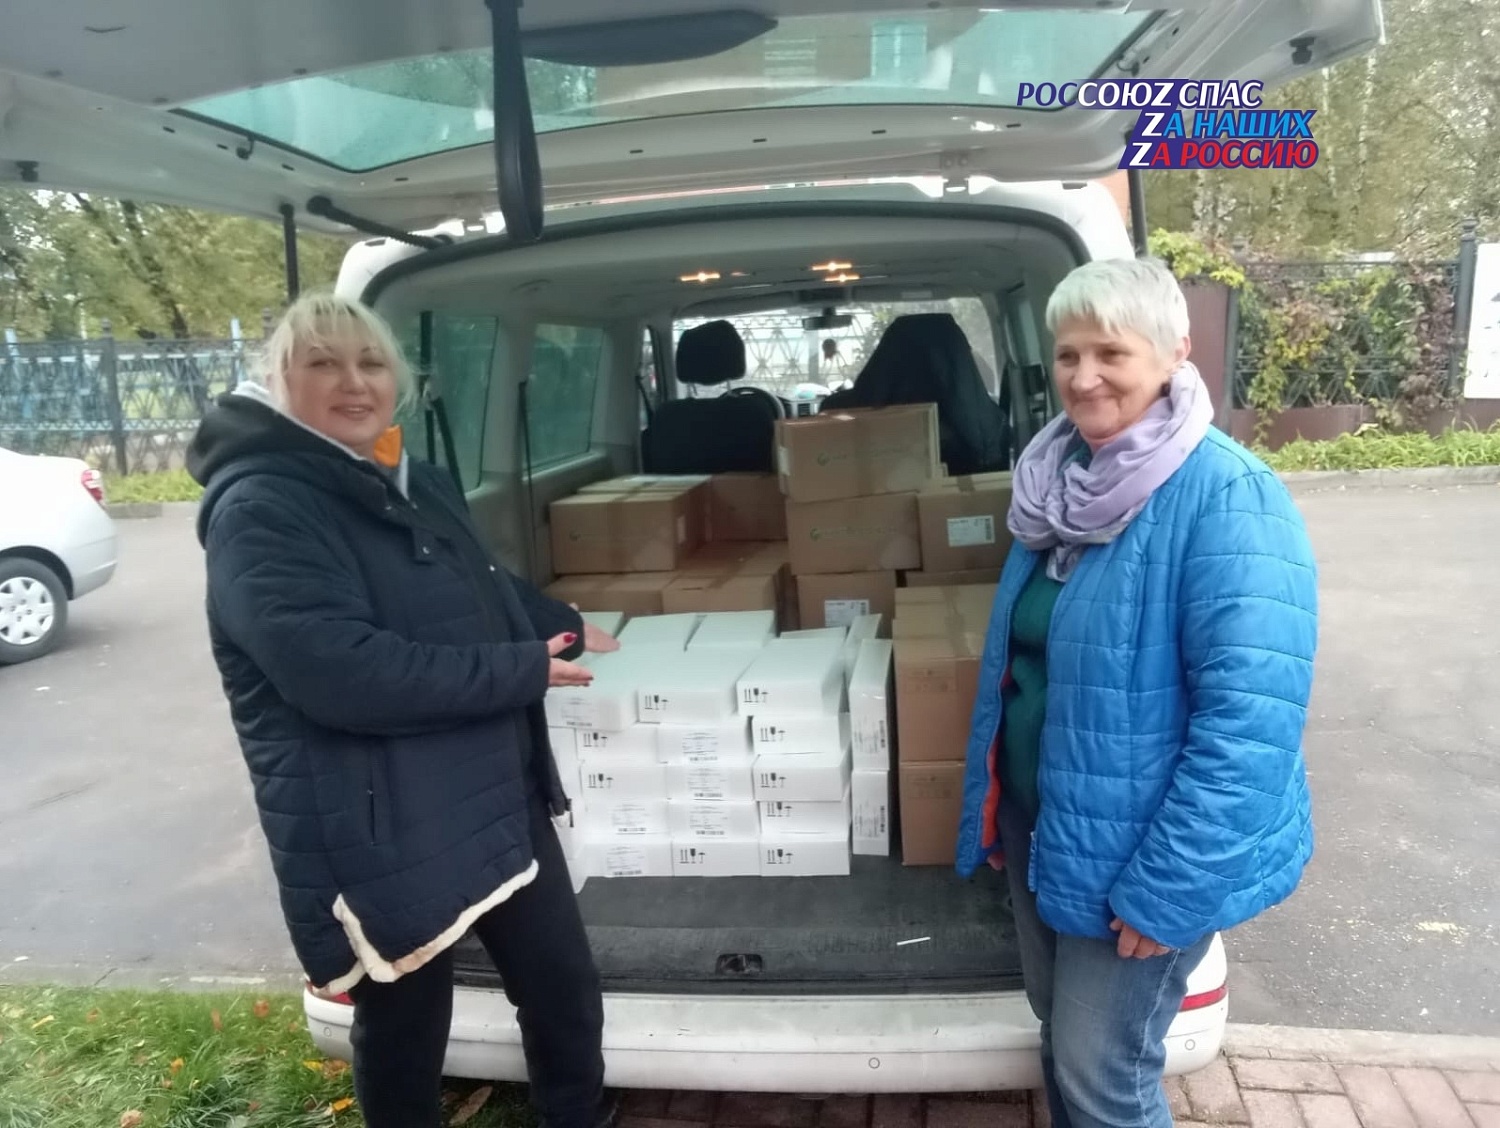 Отправка лекарств и витаминов, переданных РОССОЮЗСПАСом  Подольской Епархии для нуждающихся